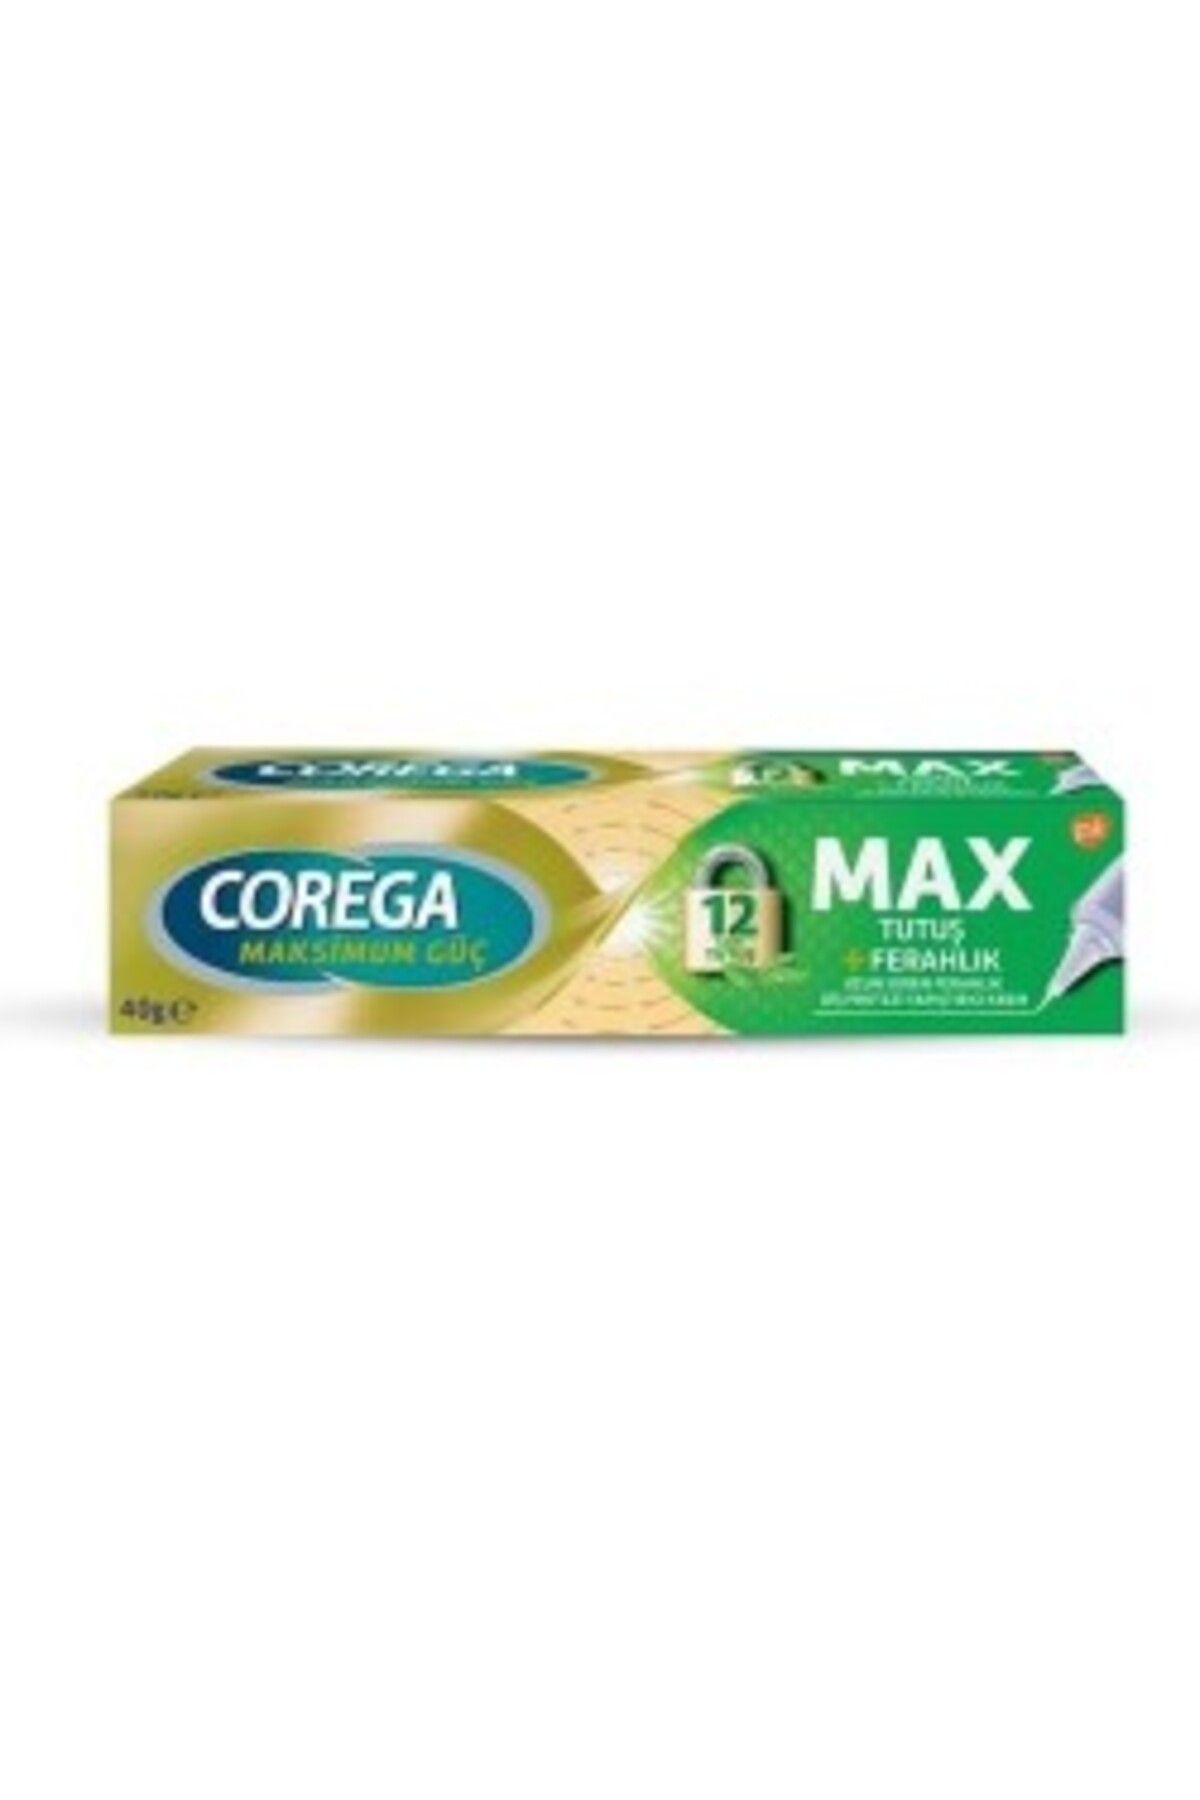 Corega Max Tutuş + Ferahlık Diş Protezi Yapıştırıcı Krem 40 gr ( 1 ADET )